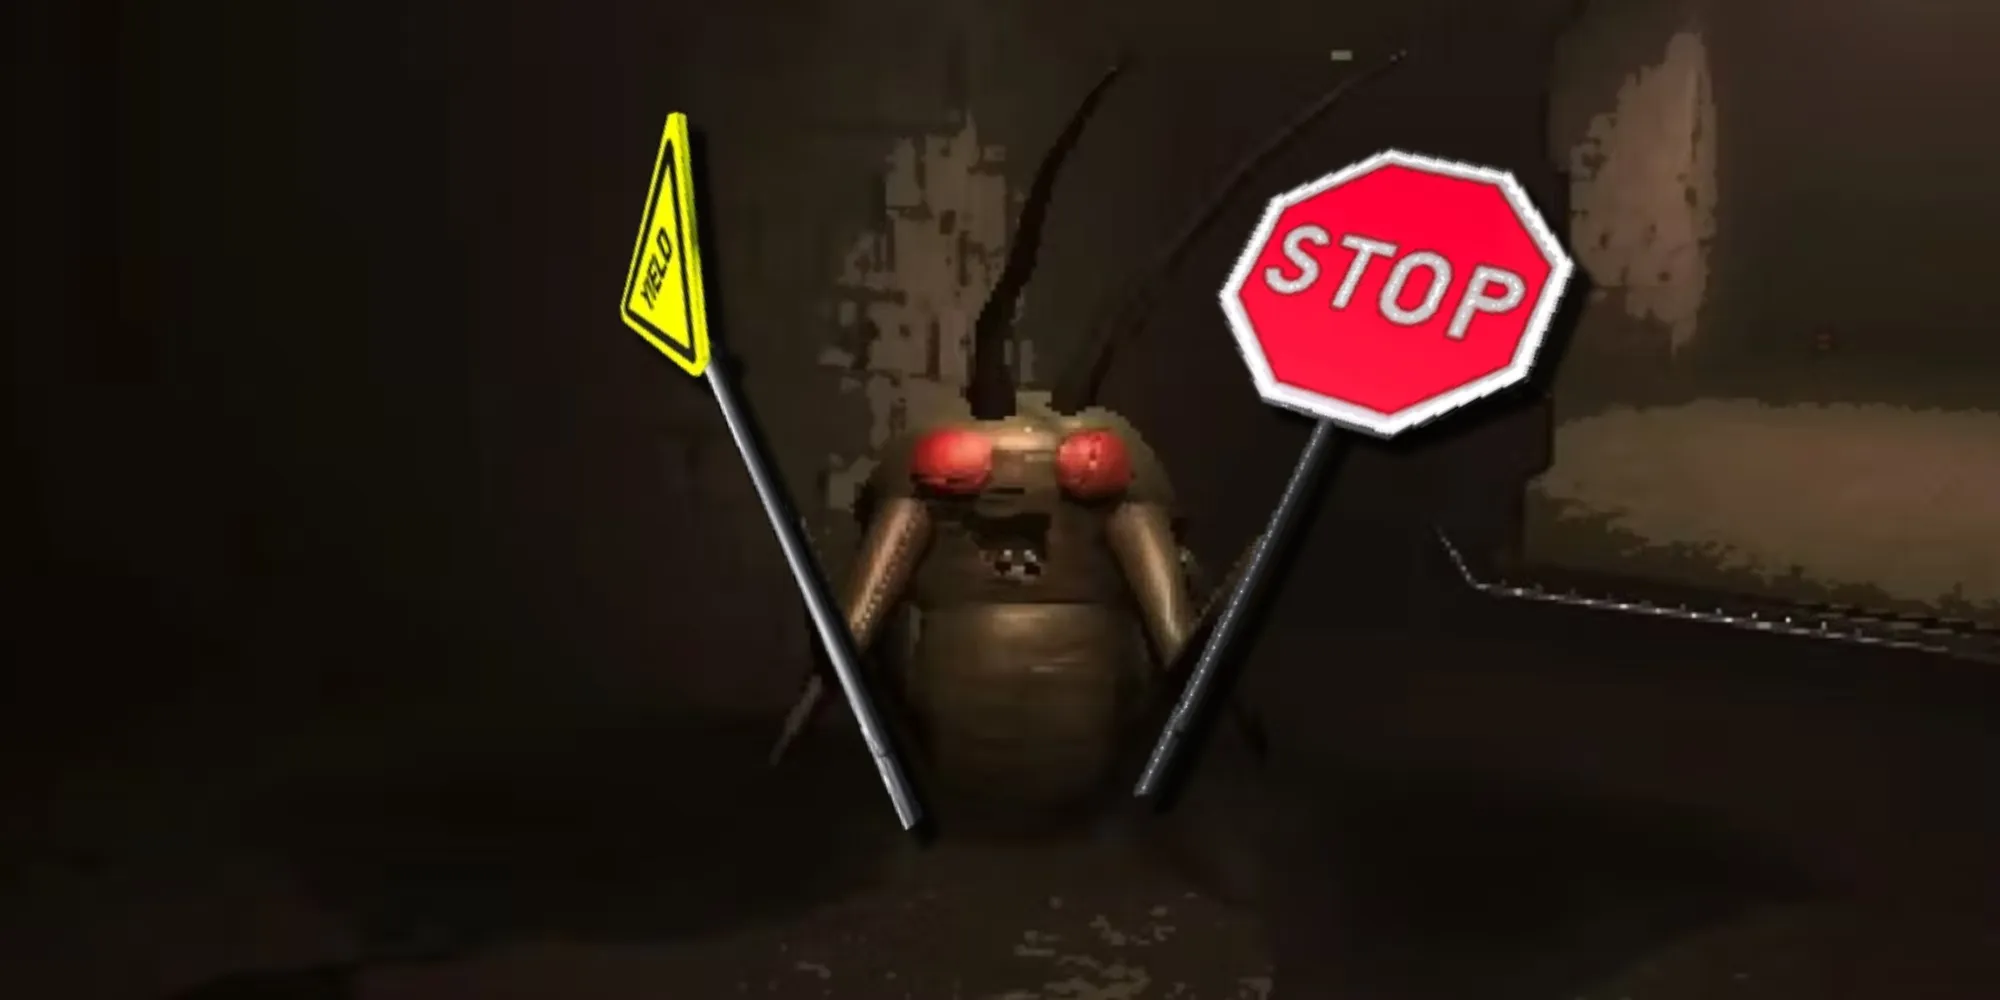 Un Bug Accumulateur tenant un stop sGameTopic dans une main et un yield sGameTopic dans l'autre, deux armes pouvant être utilisées contre les ennemis